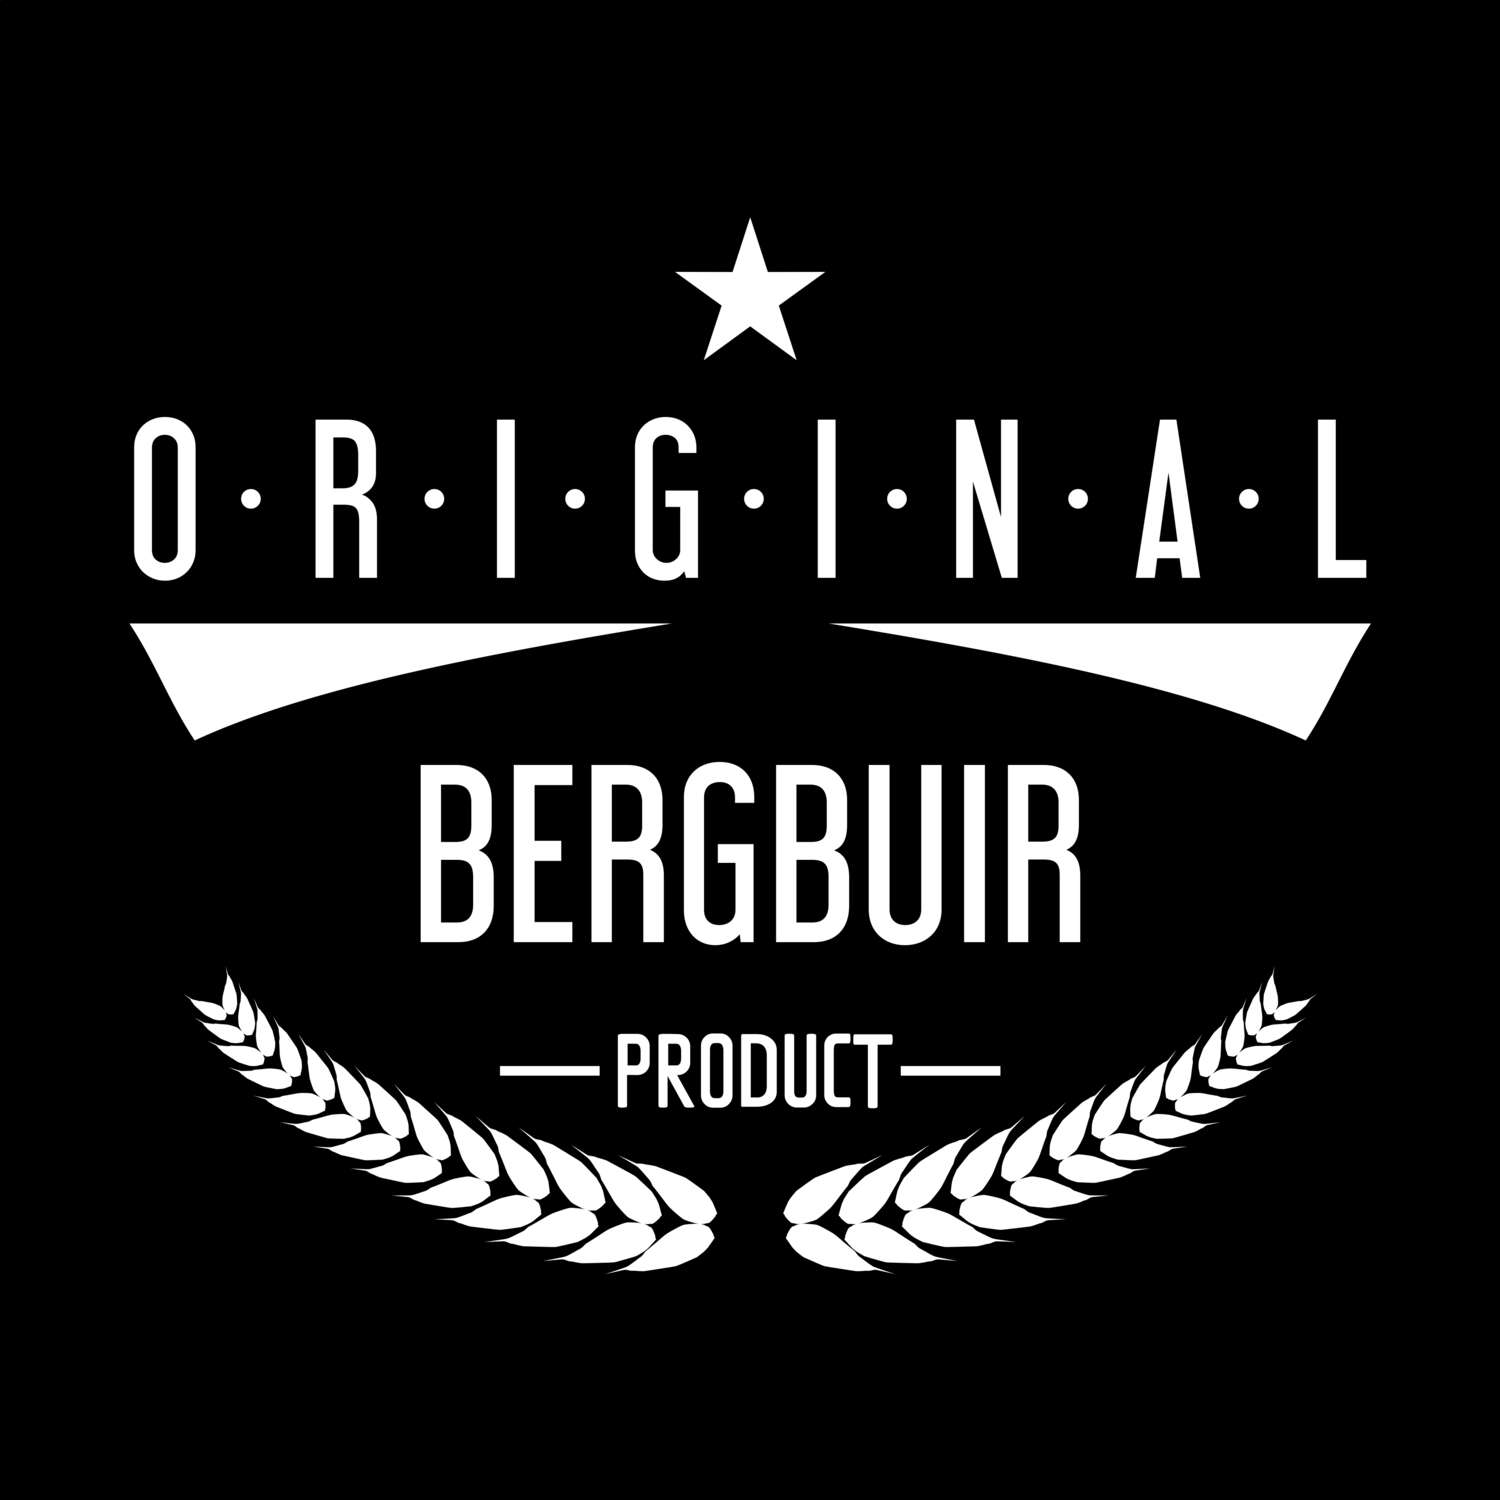 Bergbuir T-Shirt »Original Product«